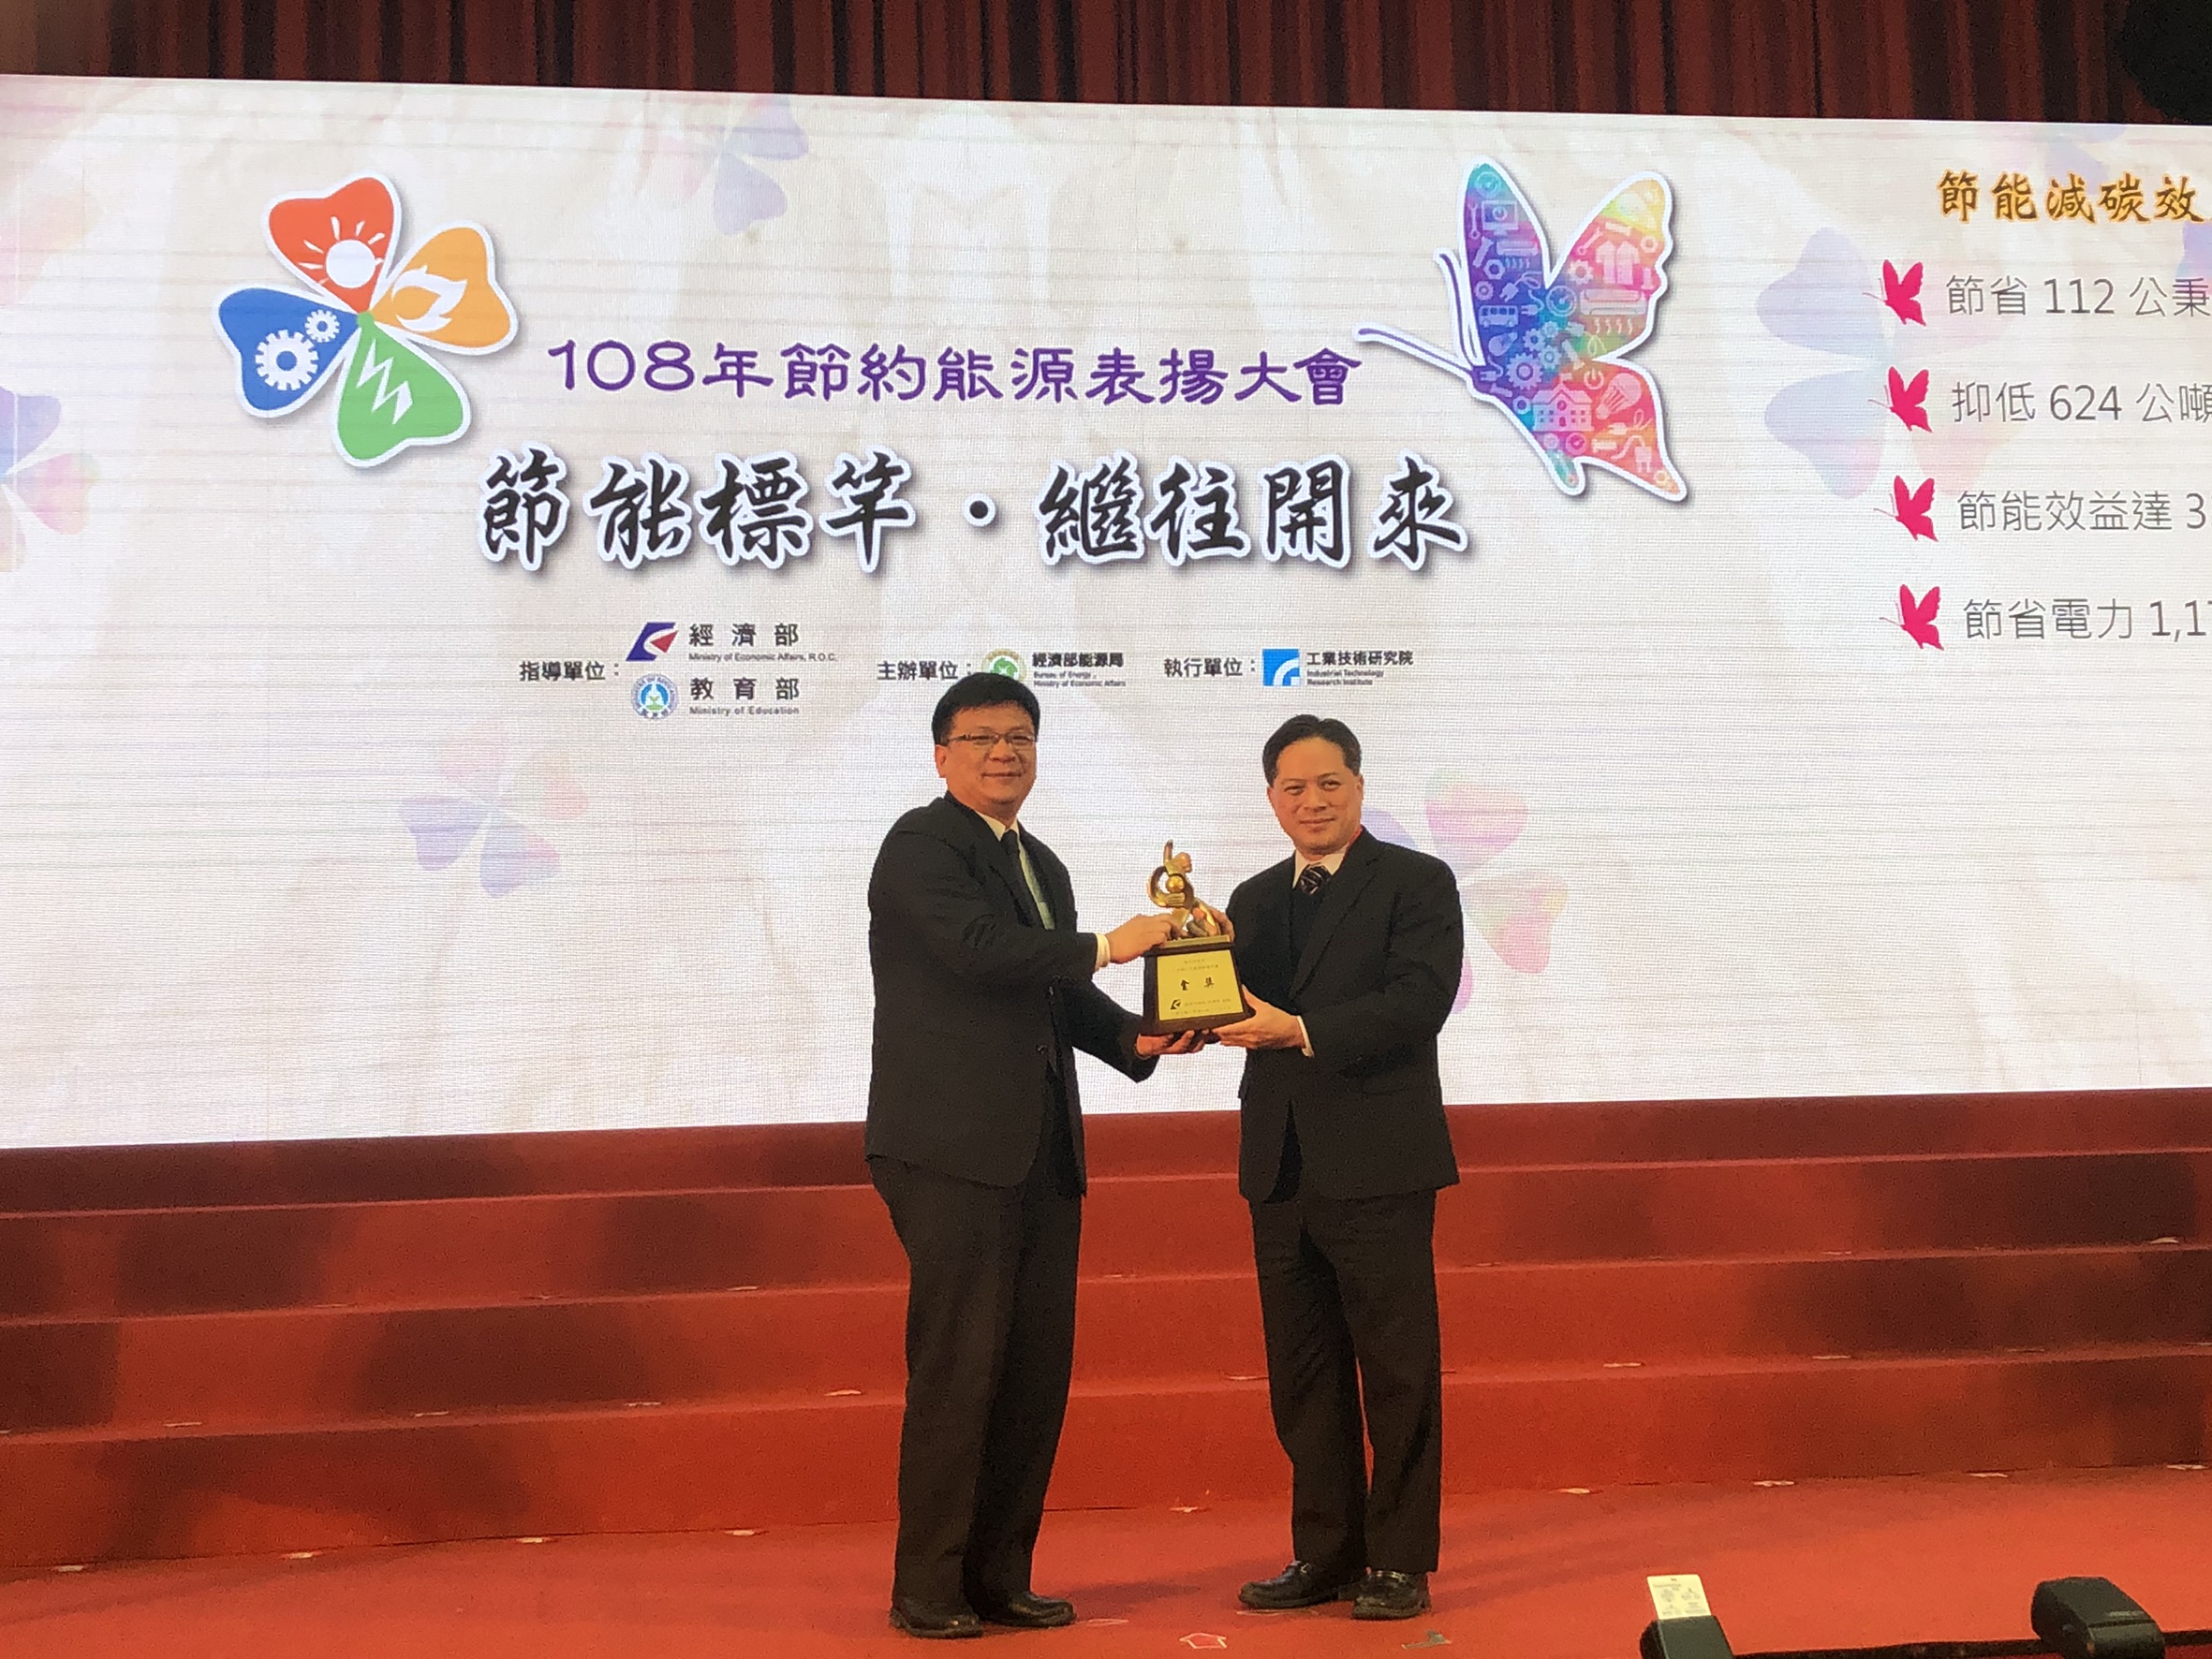 新北市政府獲頒「108年經濟部節能標竿獎」 